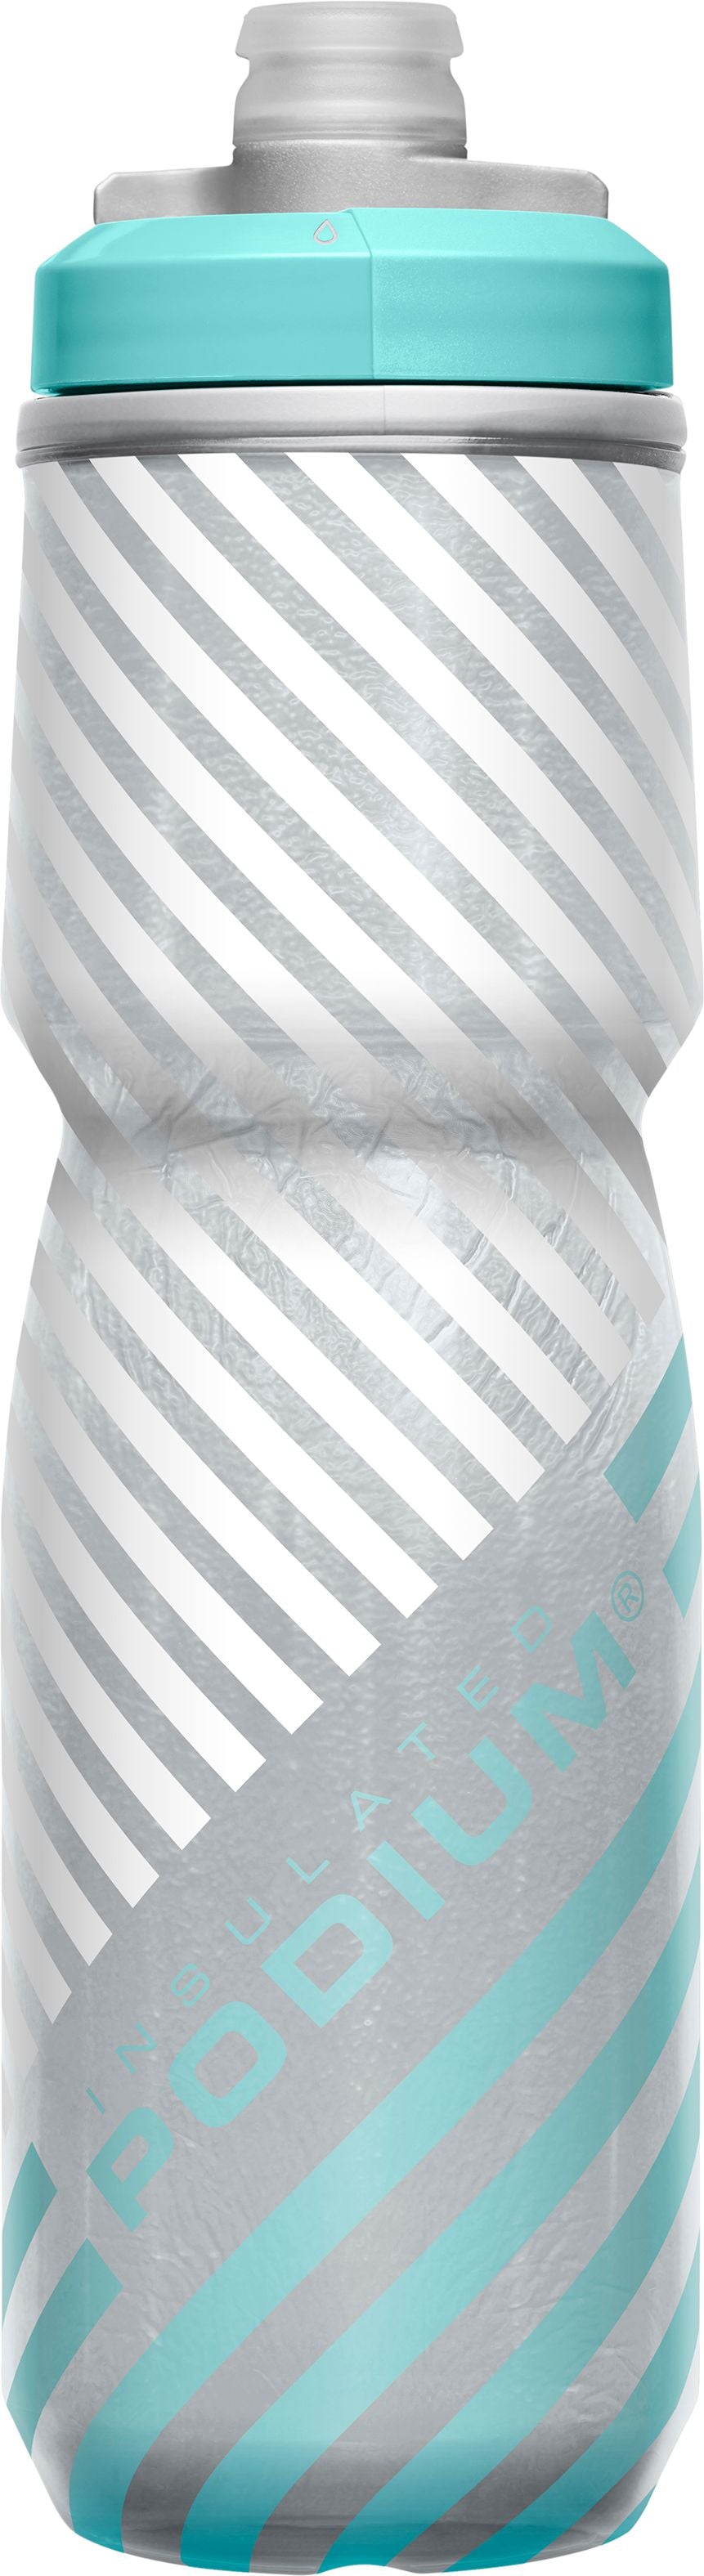 Camelbak Podium Chill Bike Bottle, Insulated Water Bottles Camelbak 24 oz Grey & Teal Stripe 2023 